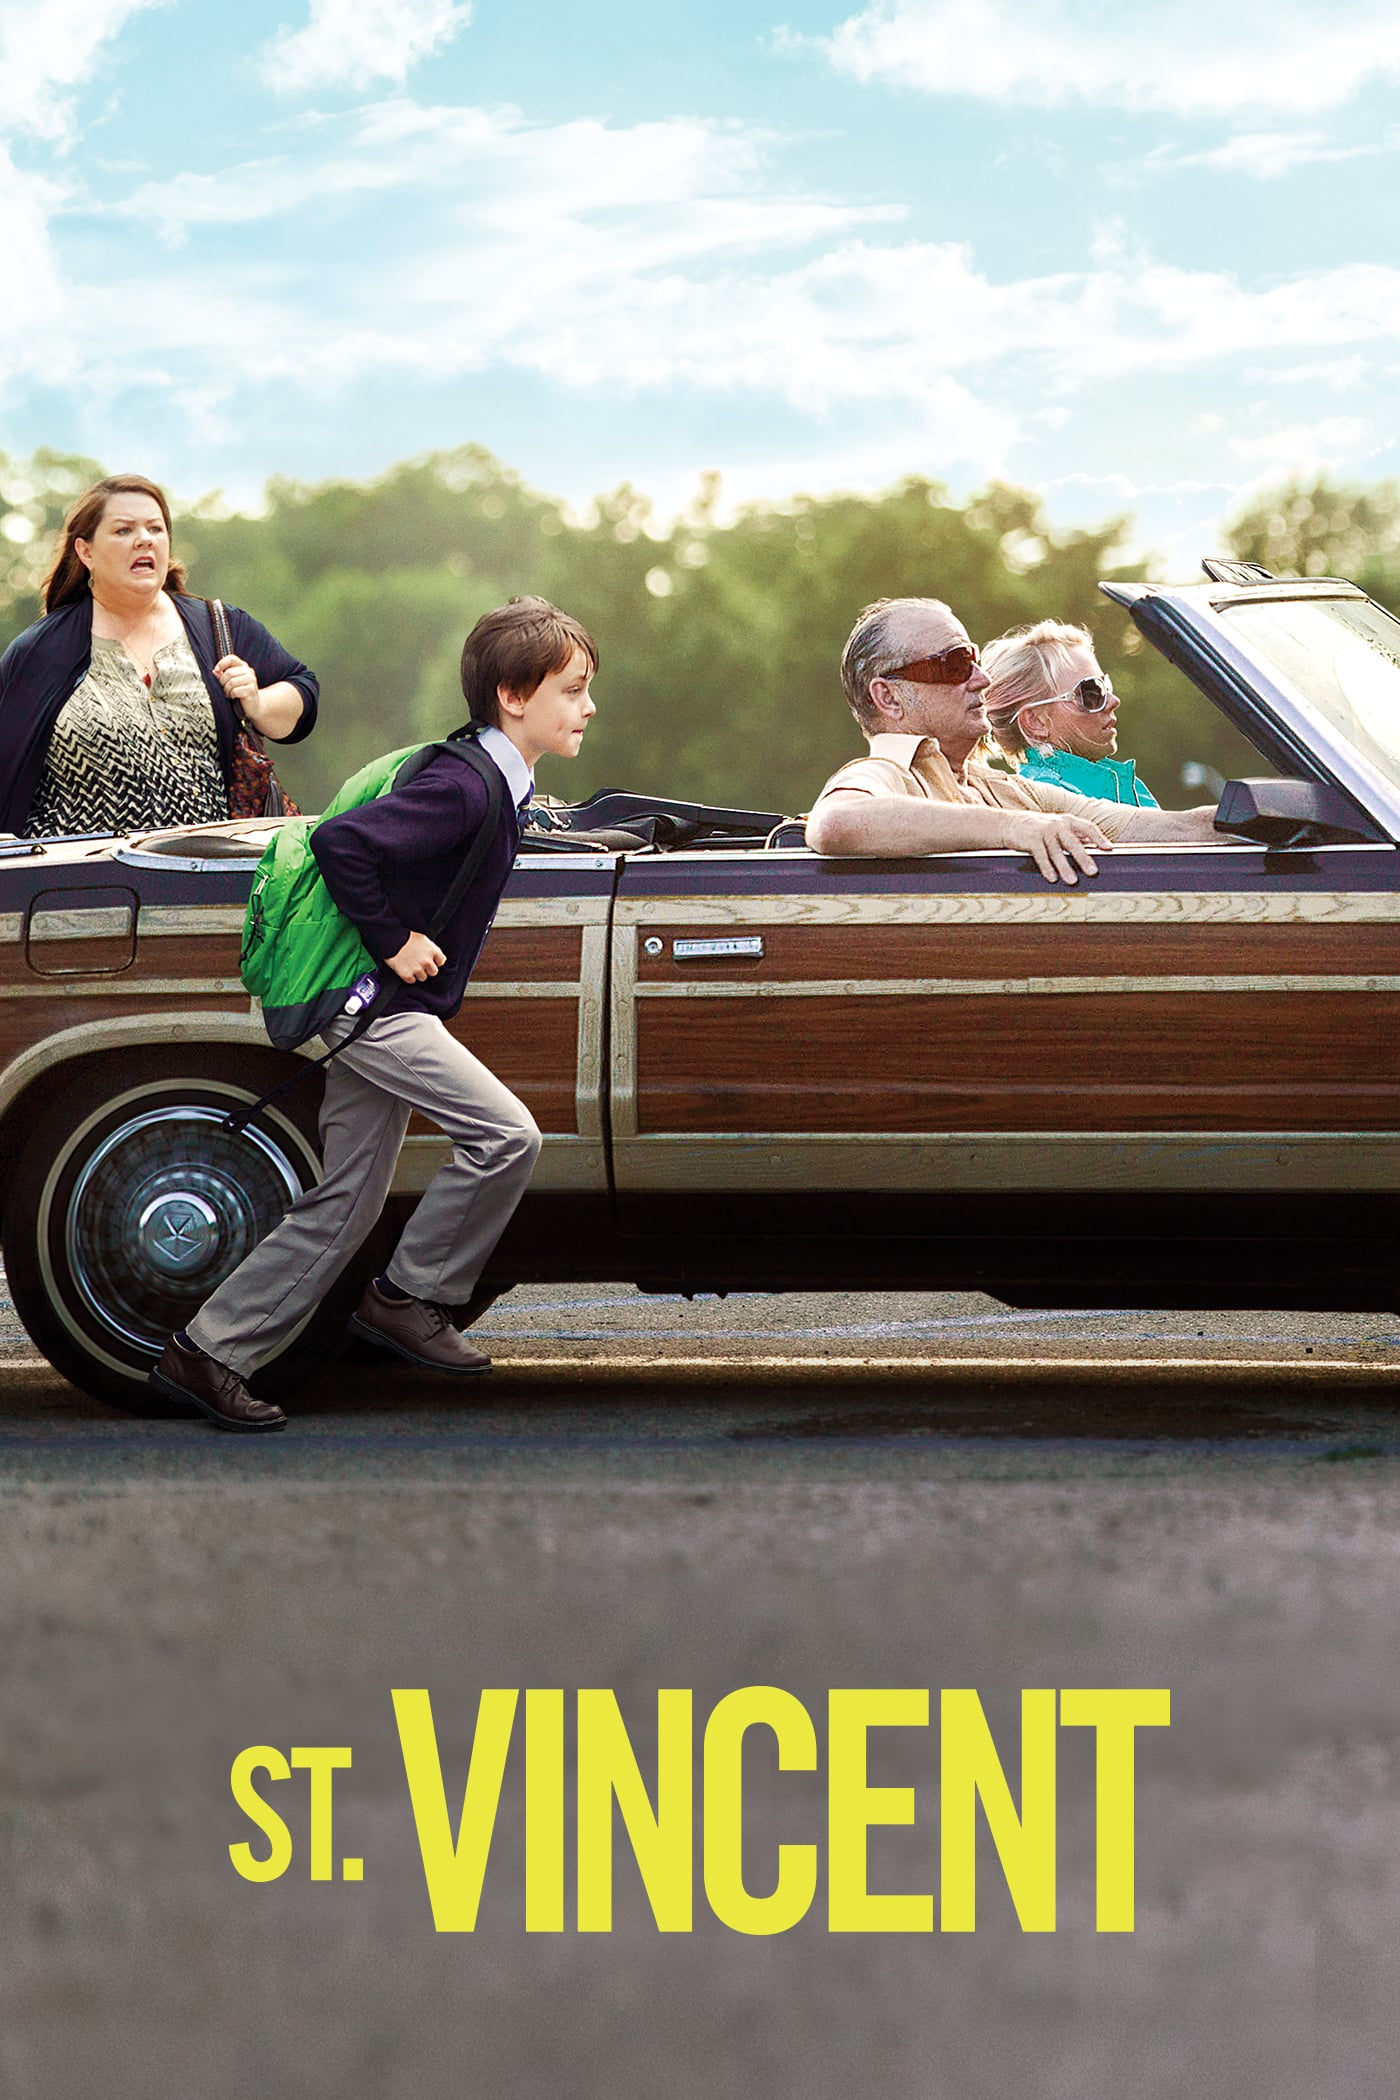 St. Vincent มนุษย์ลุงวินเซนต์ แก่กาย..แต่ใจเฟี้ยว (2014)